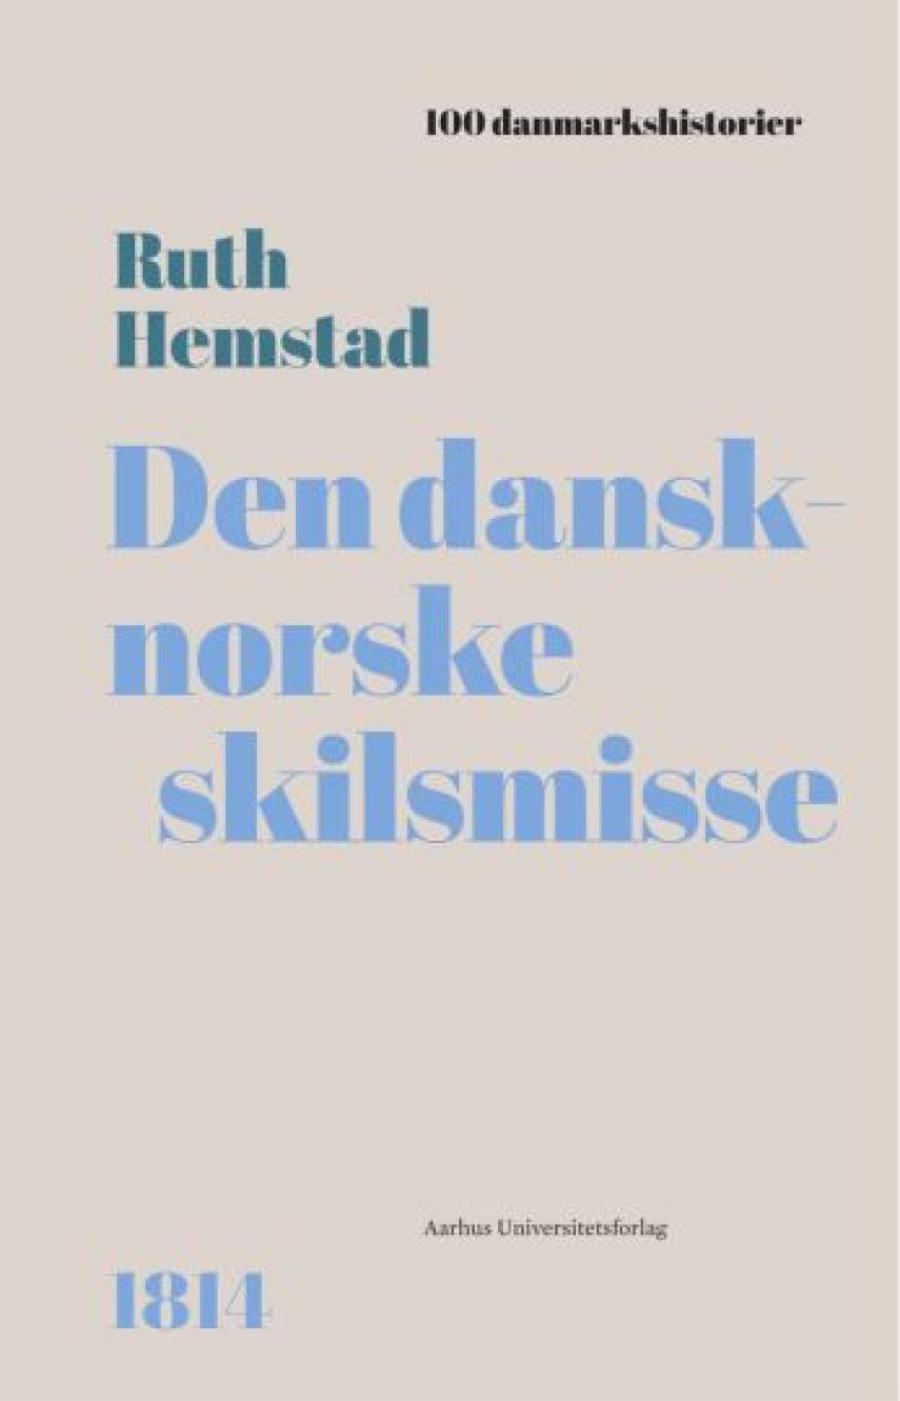 Den dansk-norske skilsmisse 1814 - forside